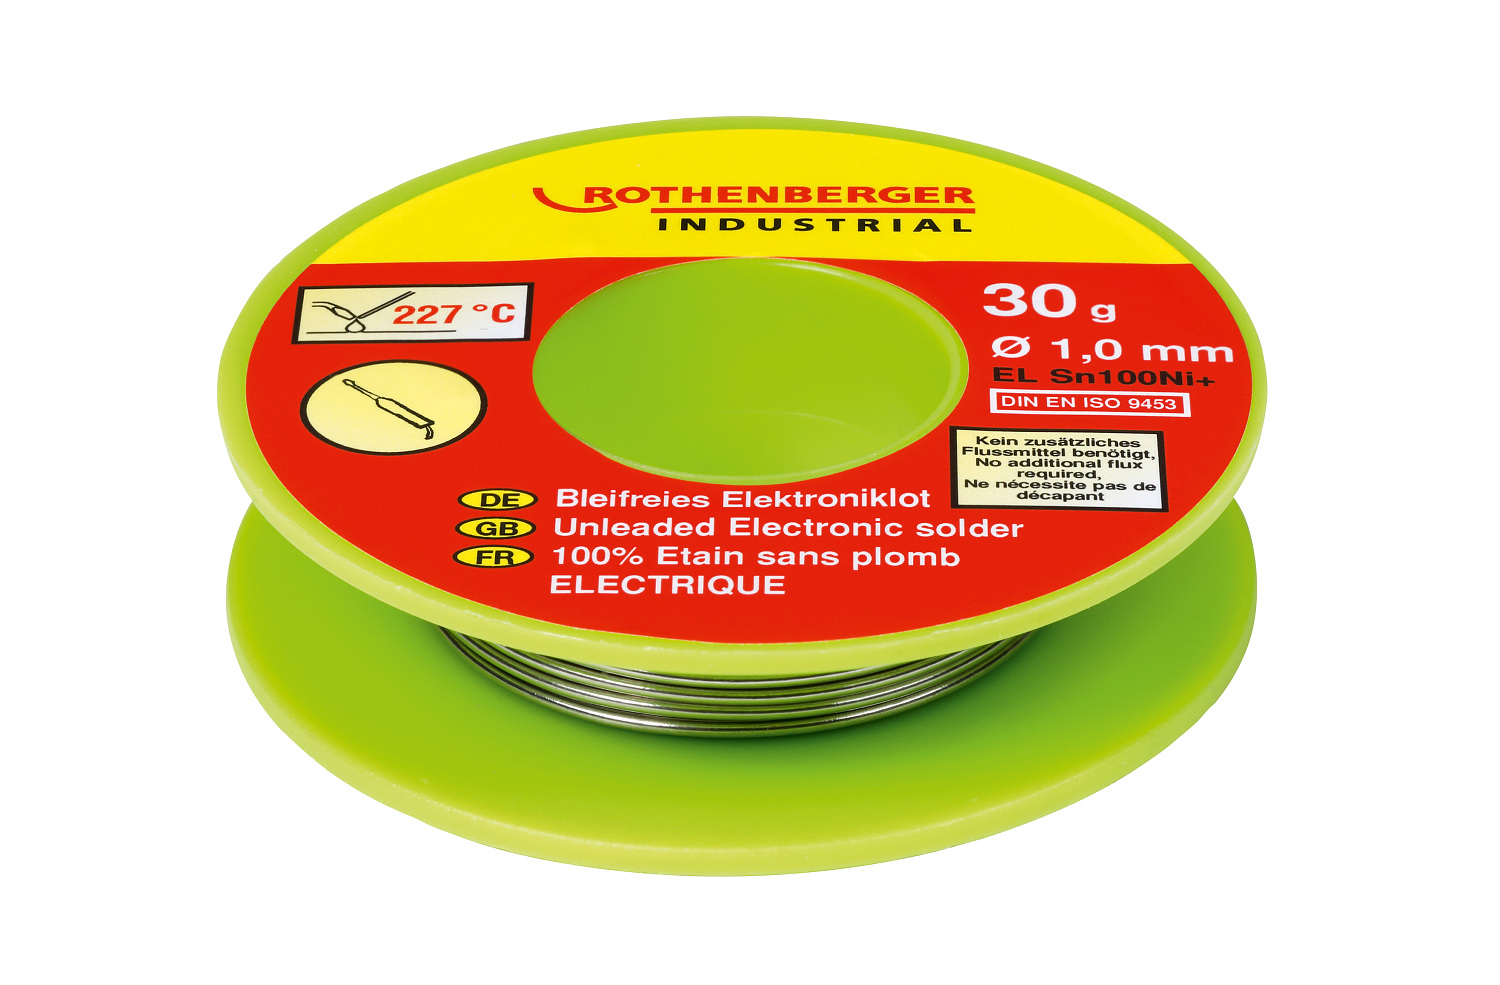 ROTHENBERGER Bleifreies Elektroniklot 30 g